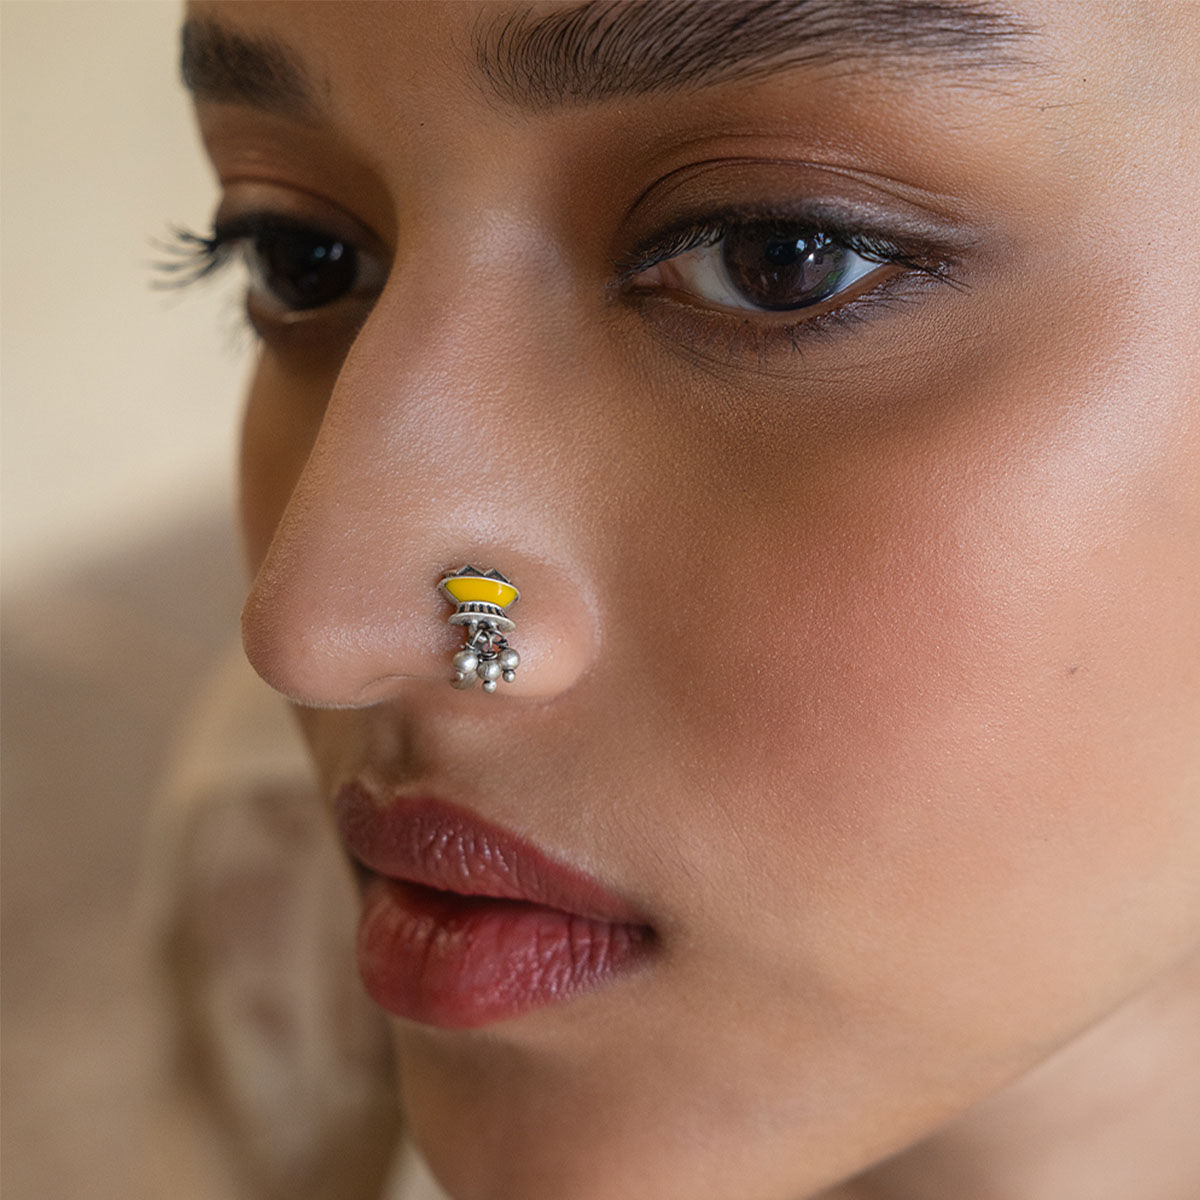 Full Moon Diamond Nose Pin | Stunning Nose Pin Designs | CaratLane